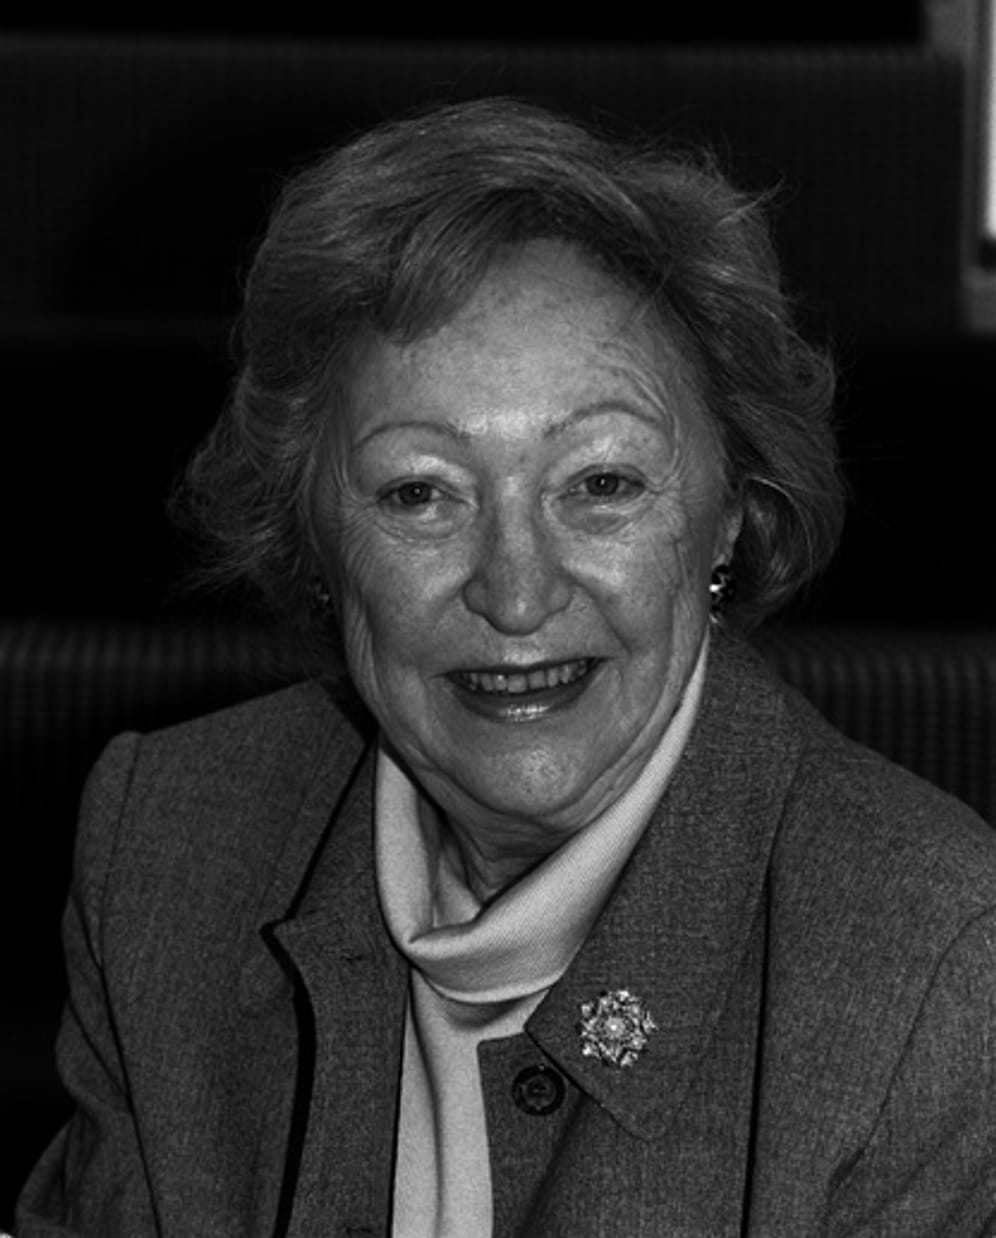 Bestsellerautorin Utta Danella starb Anfang Juli 2015 im Alter von 95 Jahren. Das gab die Familie aber erst am 11. August bekannt. Danella ist mit über 70 Millionen verkauften Büchern eine der bekanntesten und erfolgreichsten deutschsprachigen Autorinnen. Zahlreiche ihrer Werke wurden verfilmt.